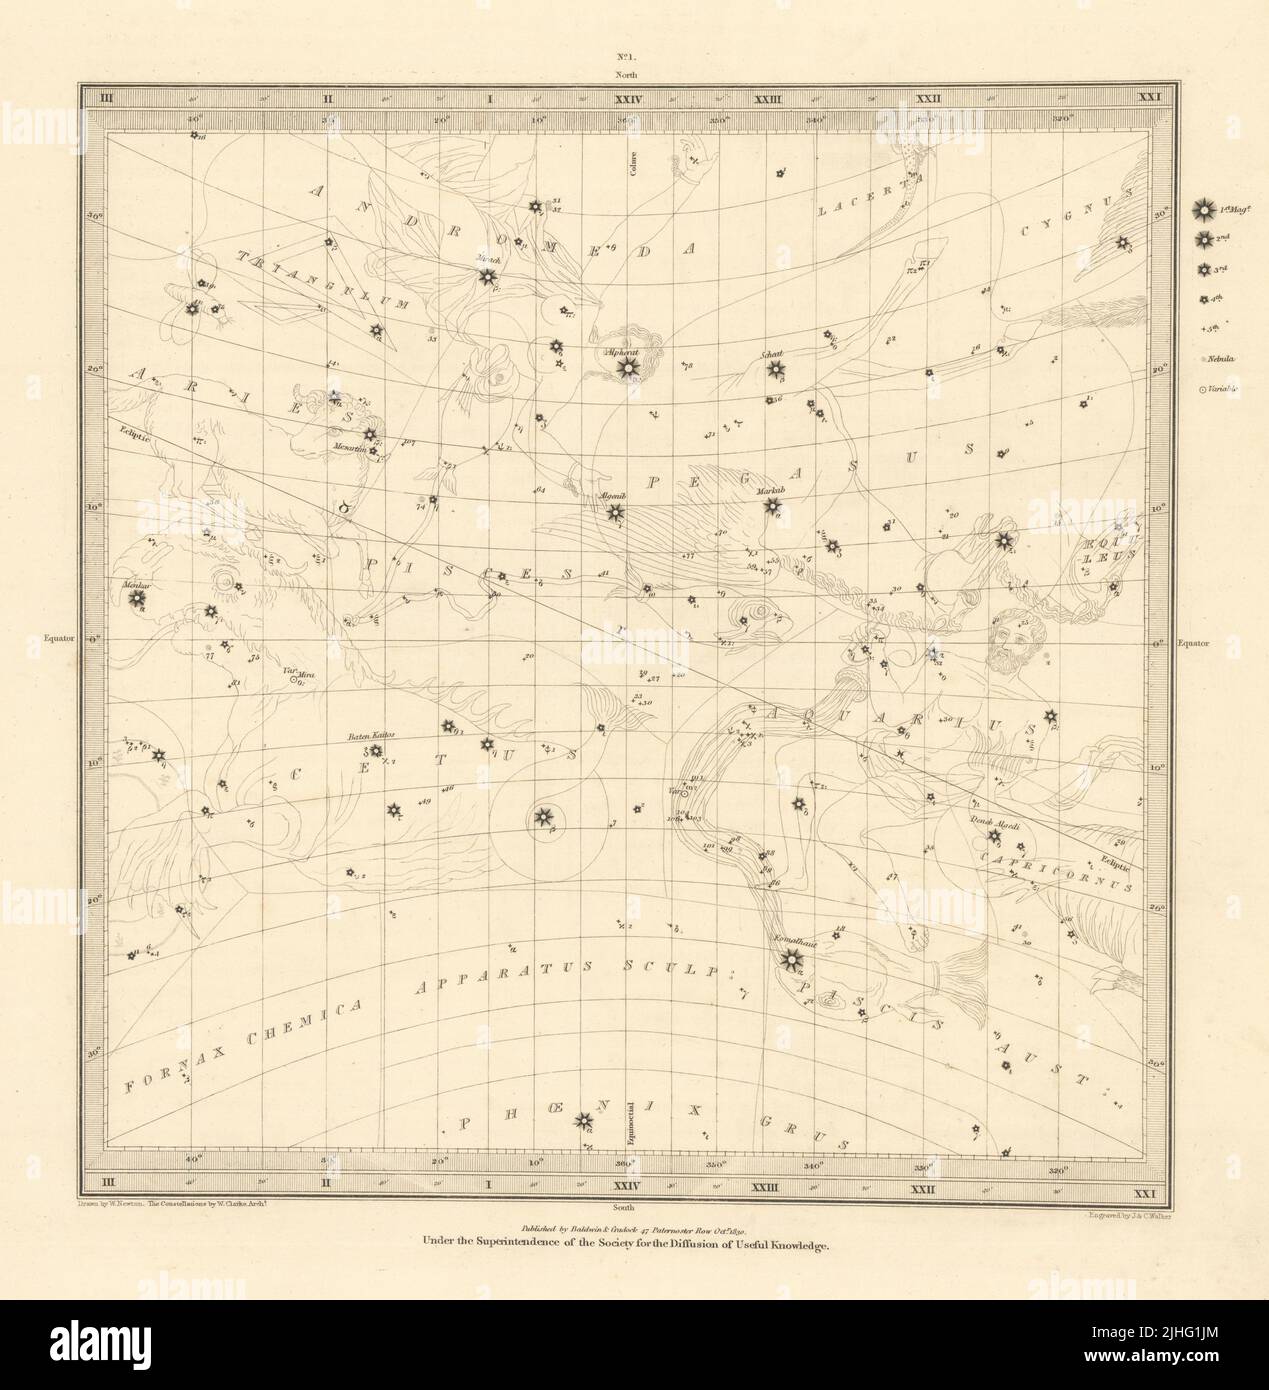 ASTRONOMÍA CELESTIAL. Mapa de estrellas. Carta estelar, I. Equinoccio de Vernal. SDUK 1830 Foto de stock